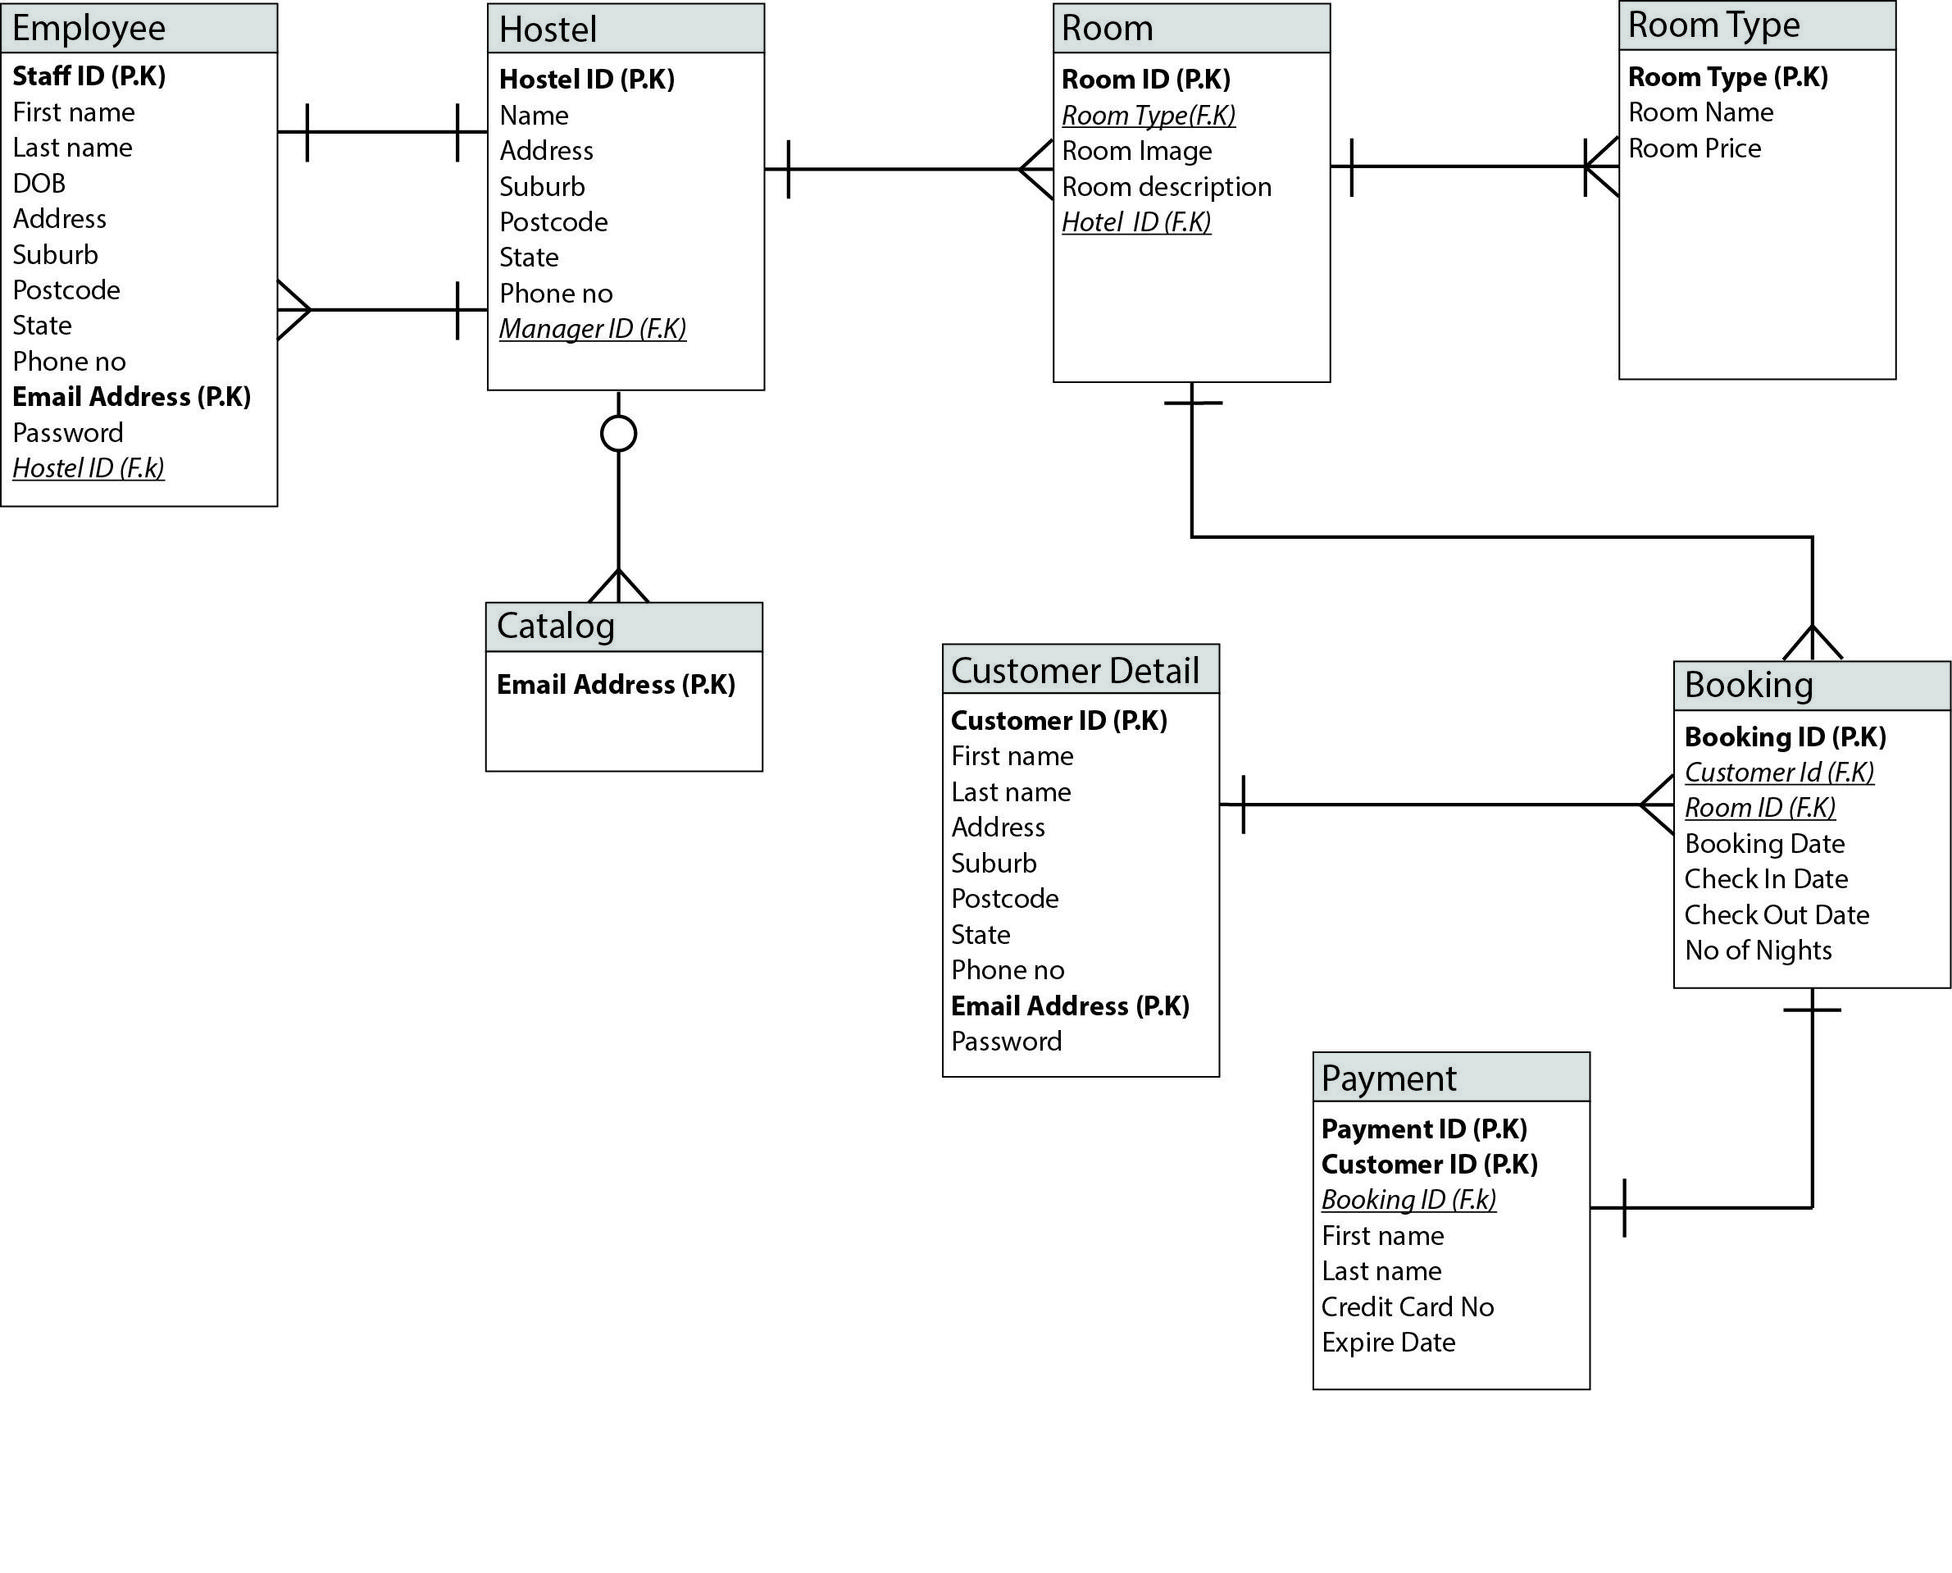 Online Hostel Management System Er Diagram - Database regarding Er Database Design